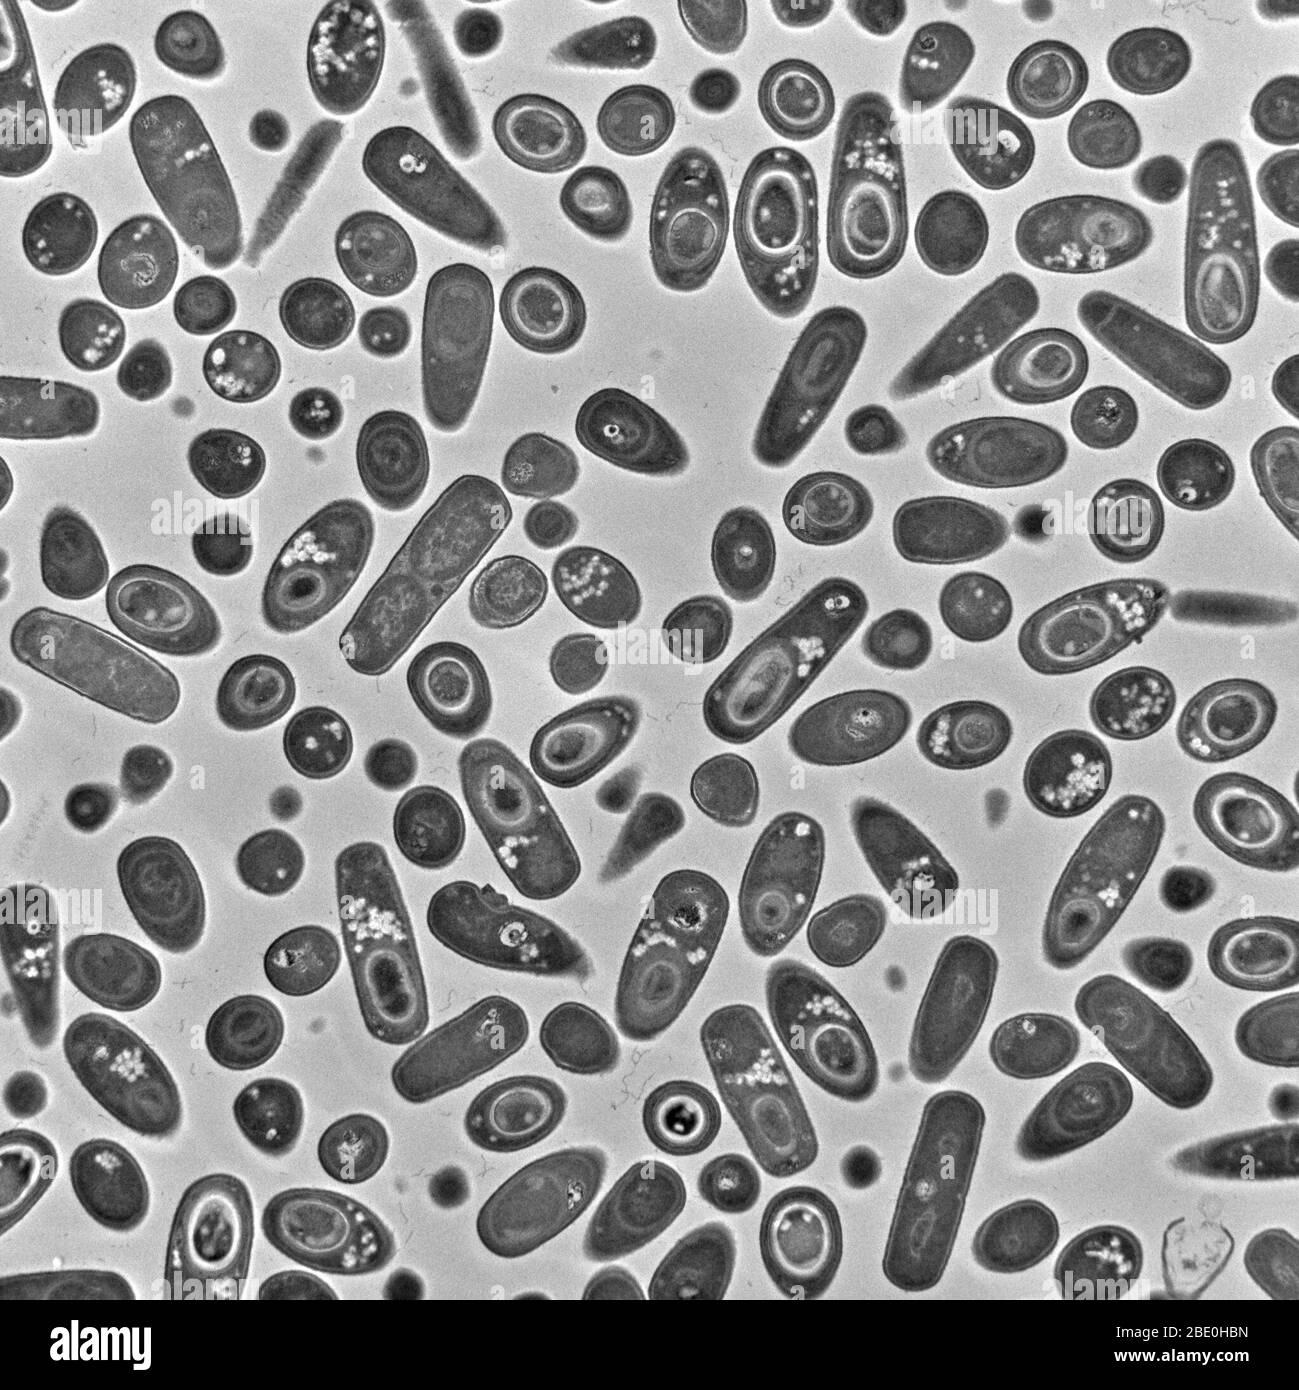 Transmission Electron Micrograph (TEM) von Bacillus subtilis Bakterien. Bacillus subtilis, auch Heubacillus oder Grasbacillus genannt, ist ein Gram-positives, katalogasespositives Bakterium, das im Boden und im Magen-Darm-Trakt von Wiederkäuern und Menschen vorkommt. B. subtilis, ein Mitglied der Gattung Bacillus, ist stabförmig und kann ein zähes, schützendes Endospore bilden, das es extremen Umweltbedingungen toleriert. B. subtilis wurde historisch als obligat Aerobe eingestuft, obwohl es Beweise dafür gibt, dass es sich um einen fakultativen Aerobe handelt. B. subtilis gilt als das am besten untersuchte Gram-positive Stockfoto